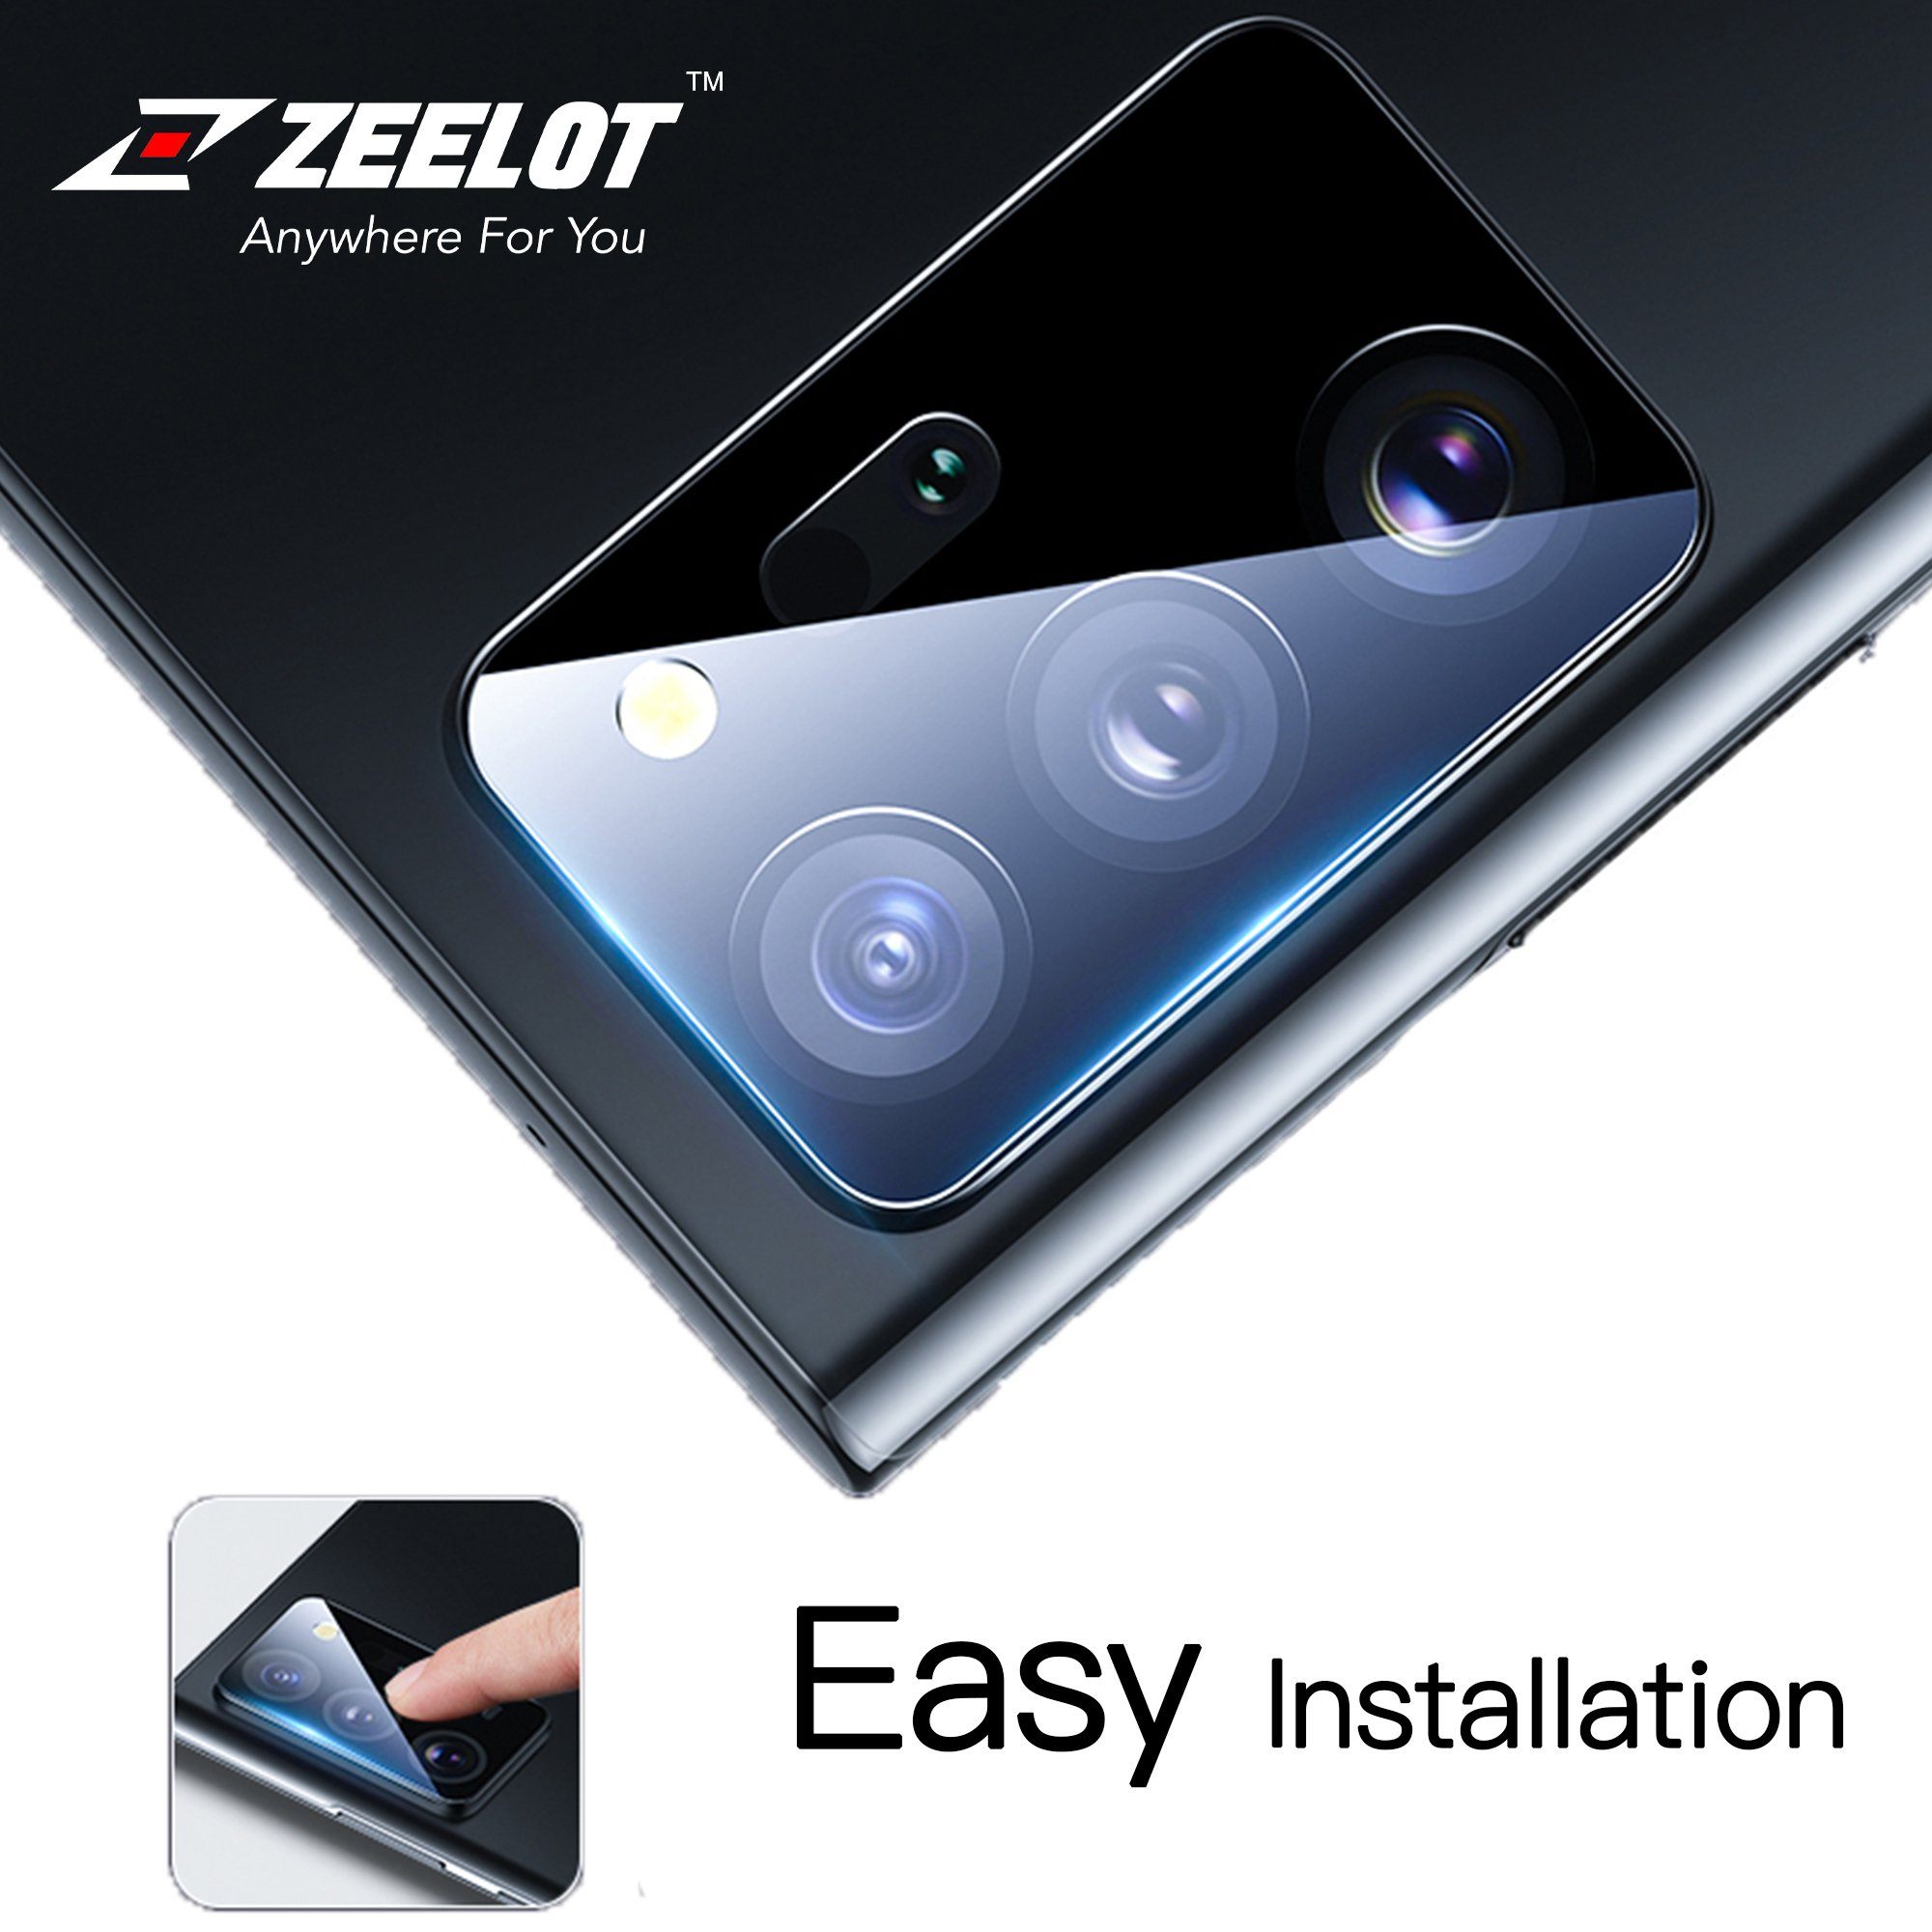 ZEELOT Samsung Galaxy Note 20 Lens Protector, Black Default ZEELOT 